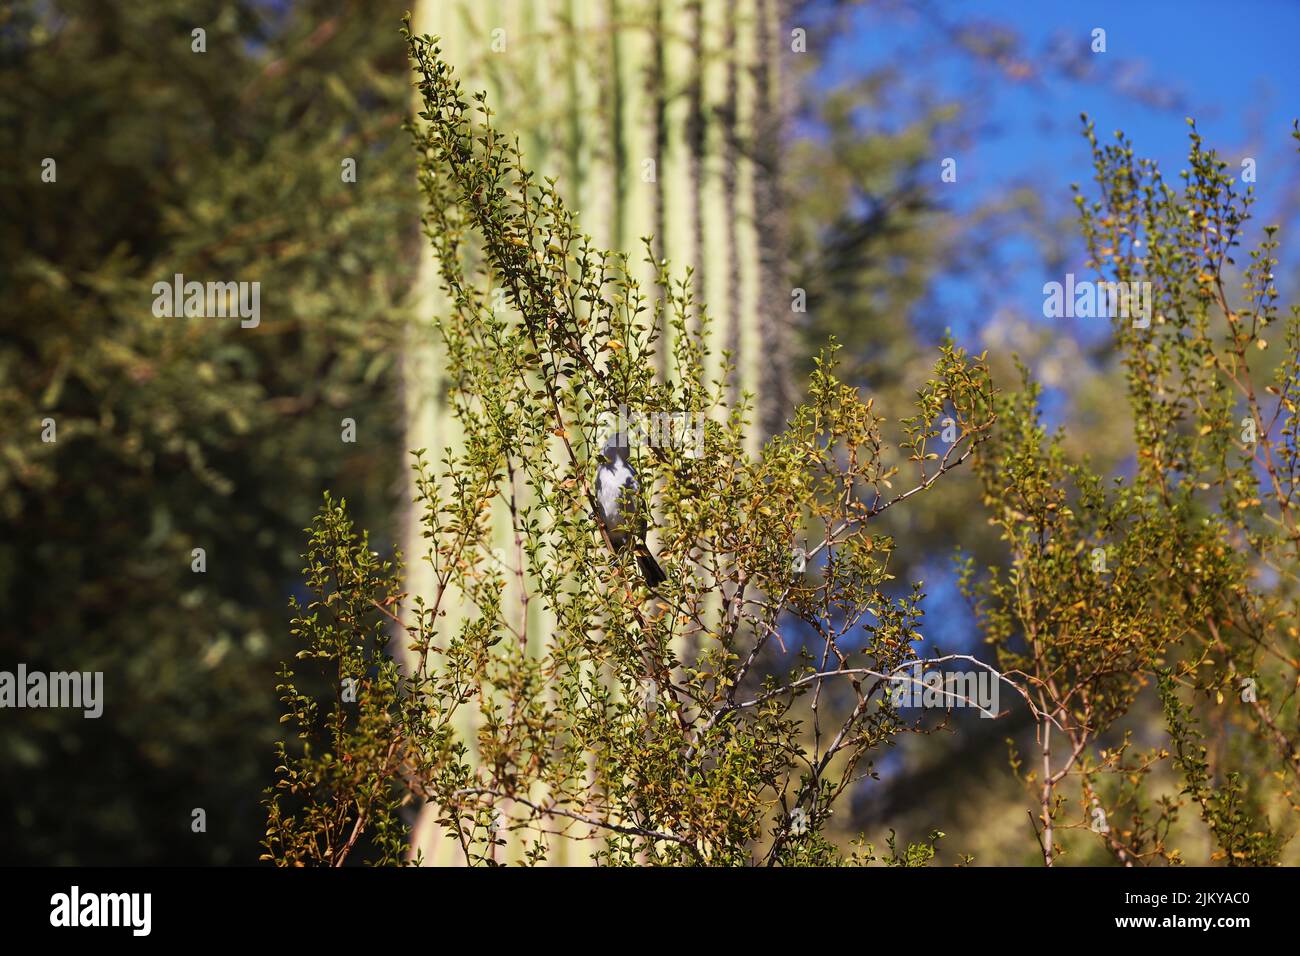 A closeup shot of a Desert bird in a creosote tree Stock Photo